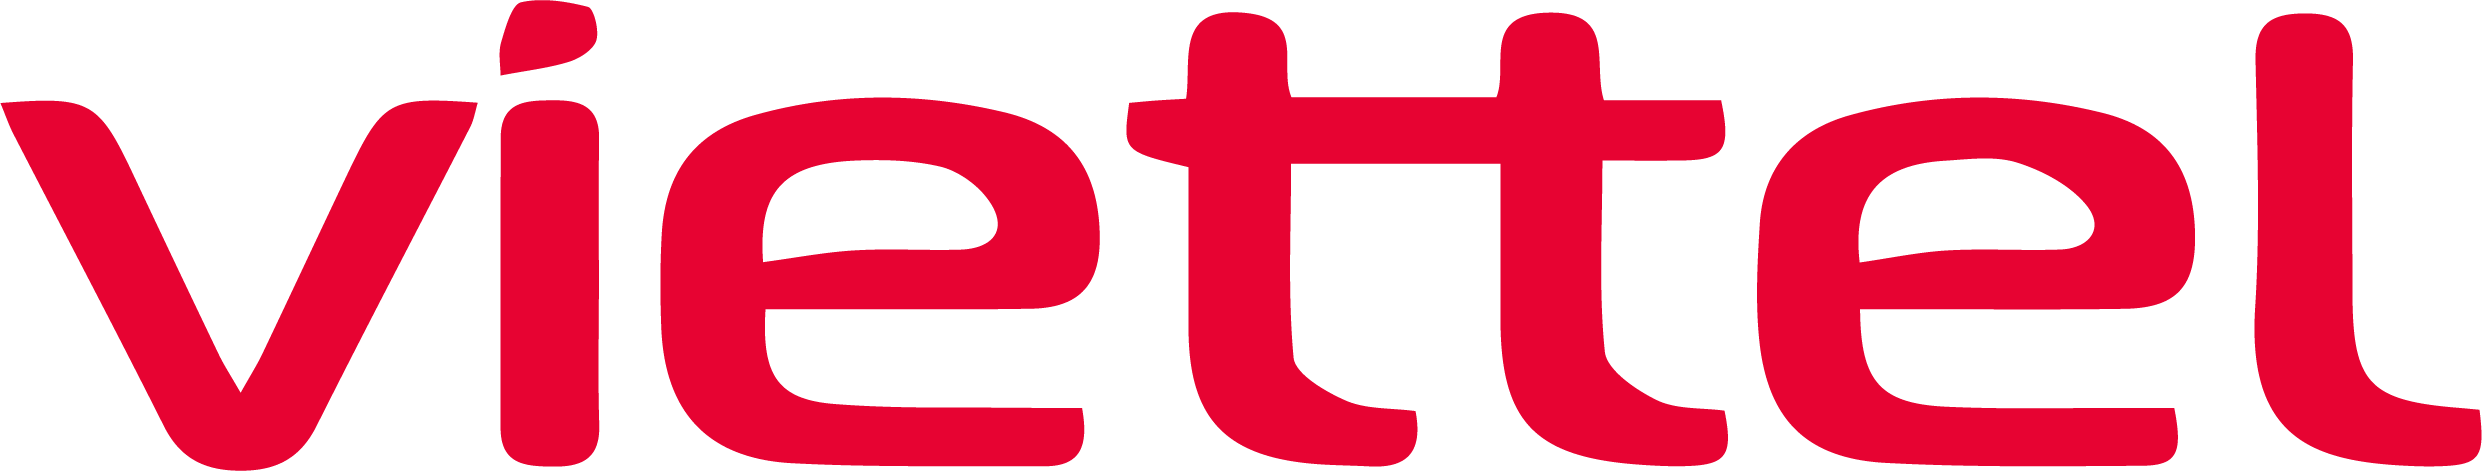 Viettel đổi logo màu xanh thần thánh sang màu đỏ